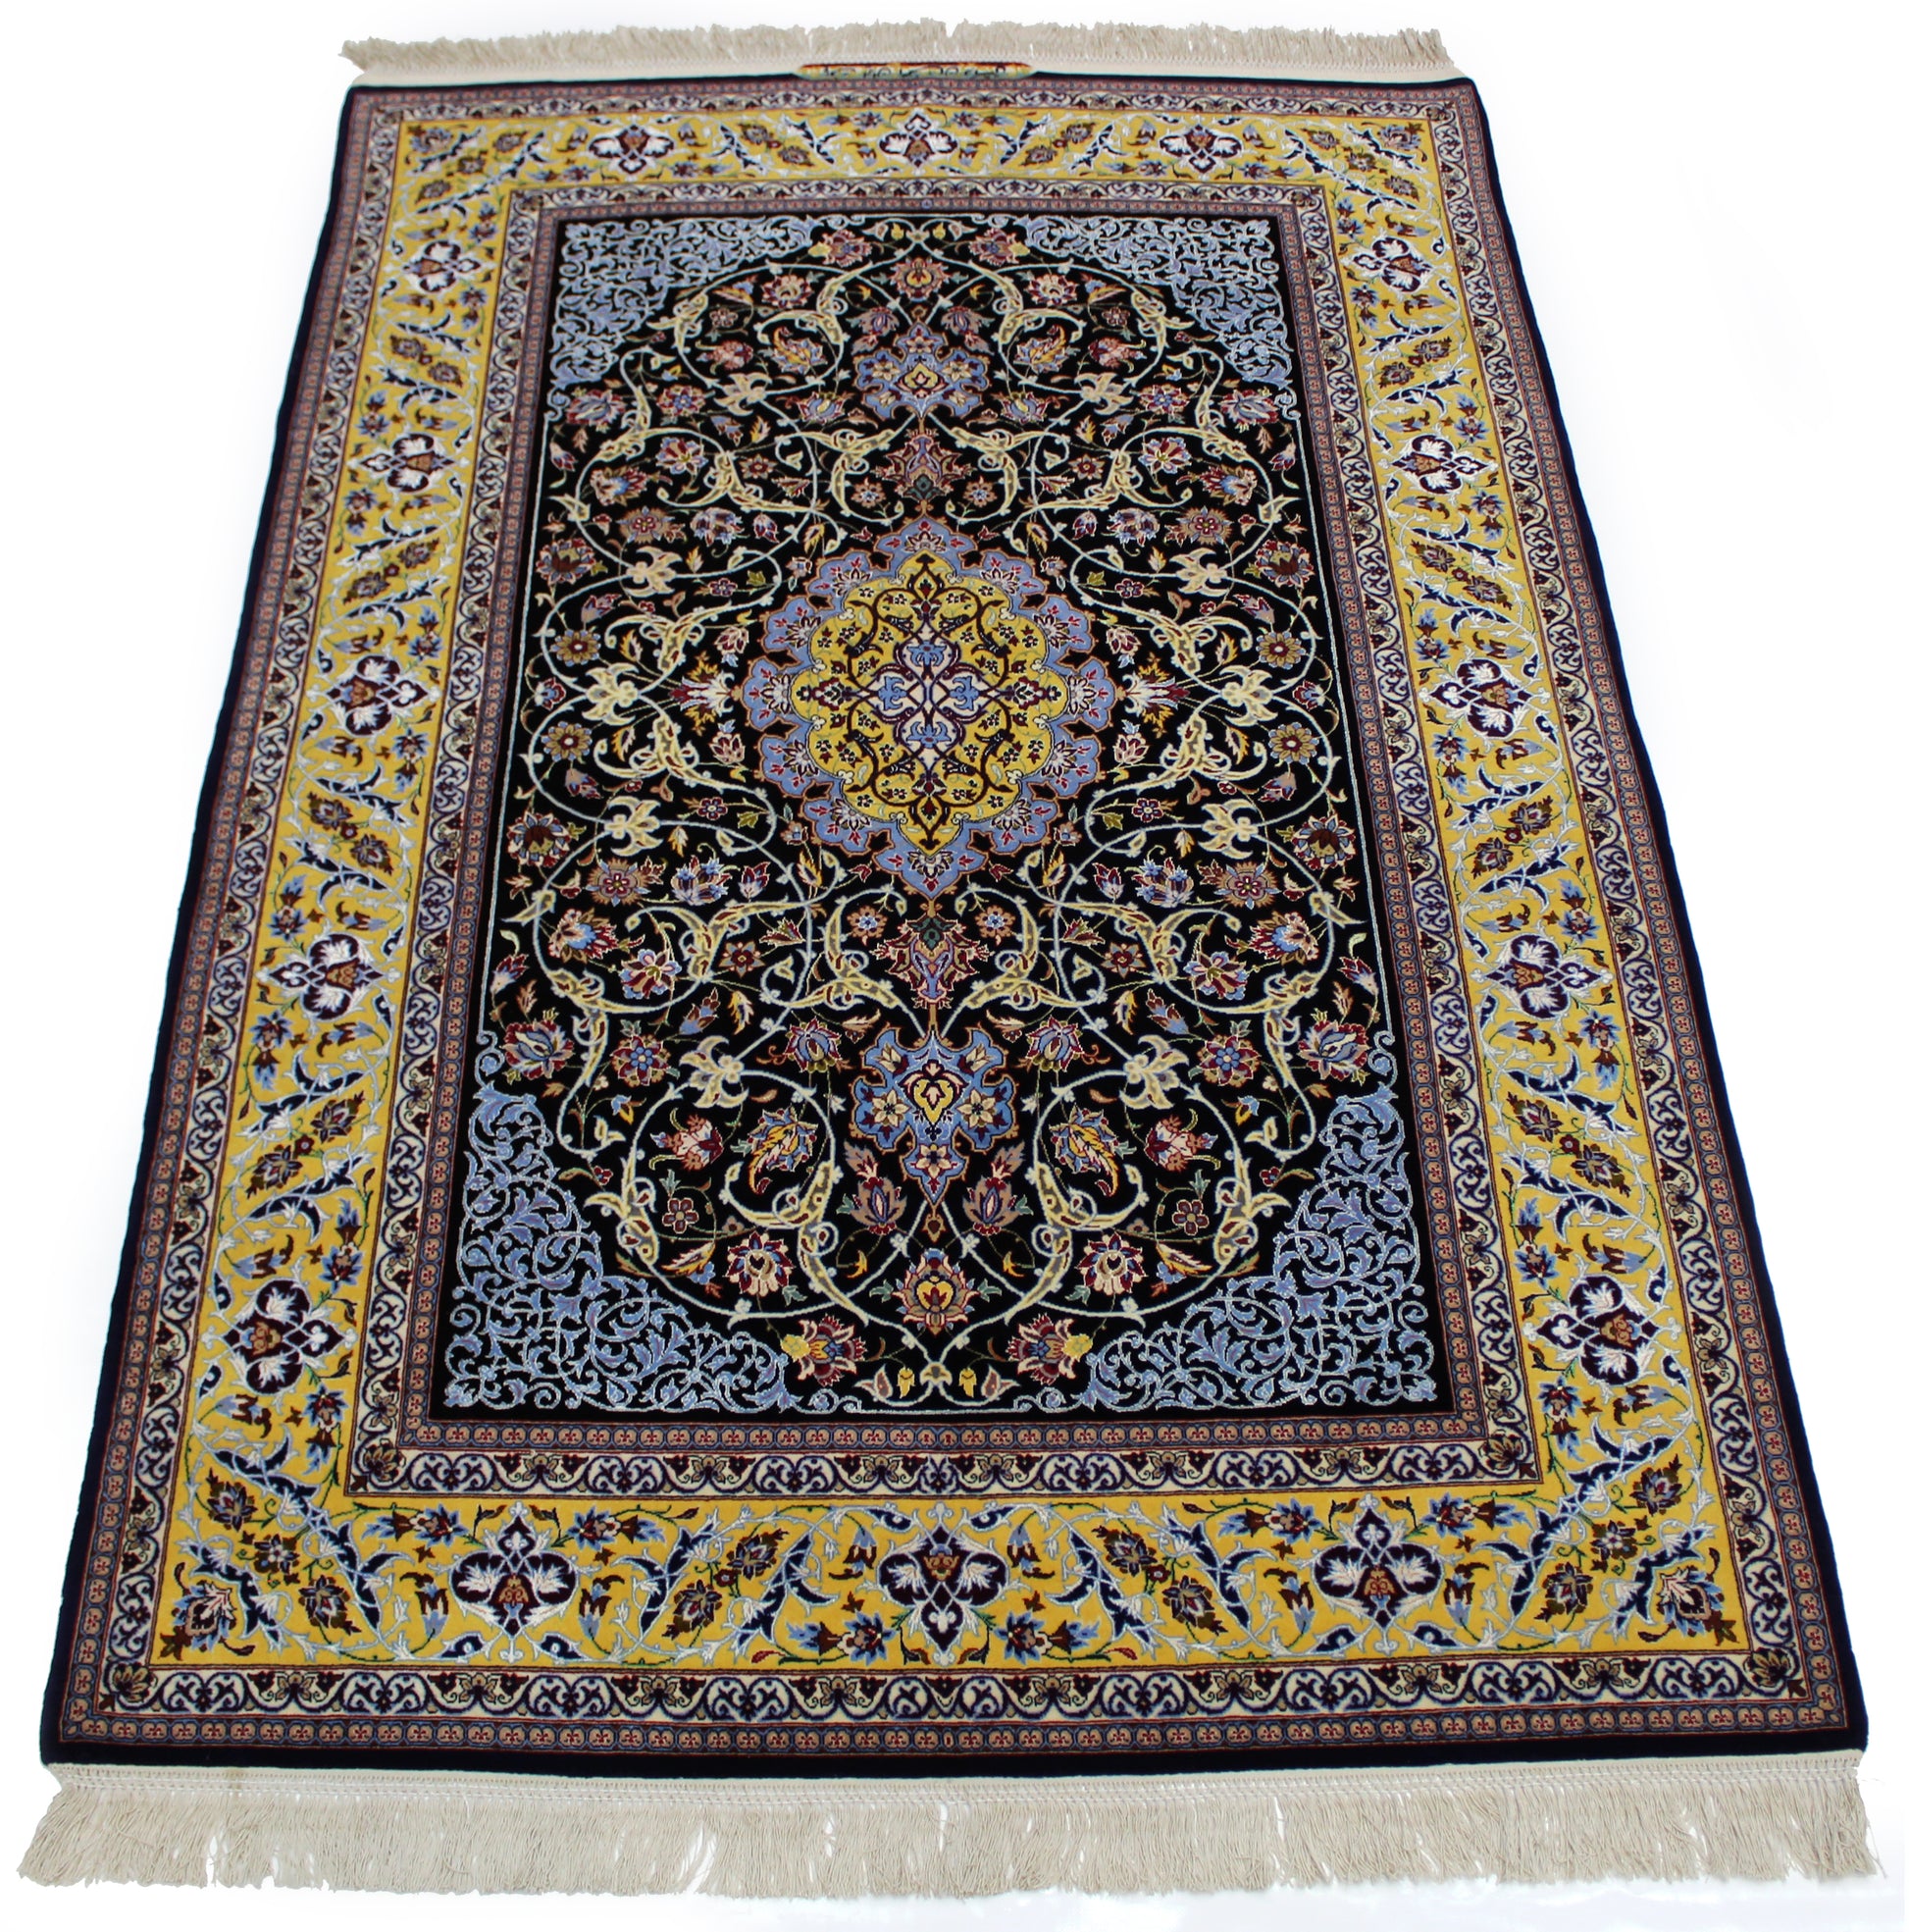 Isfahan Area Rug 194cm x 128cm